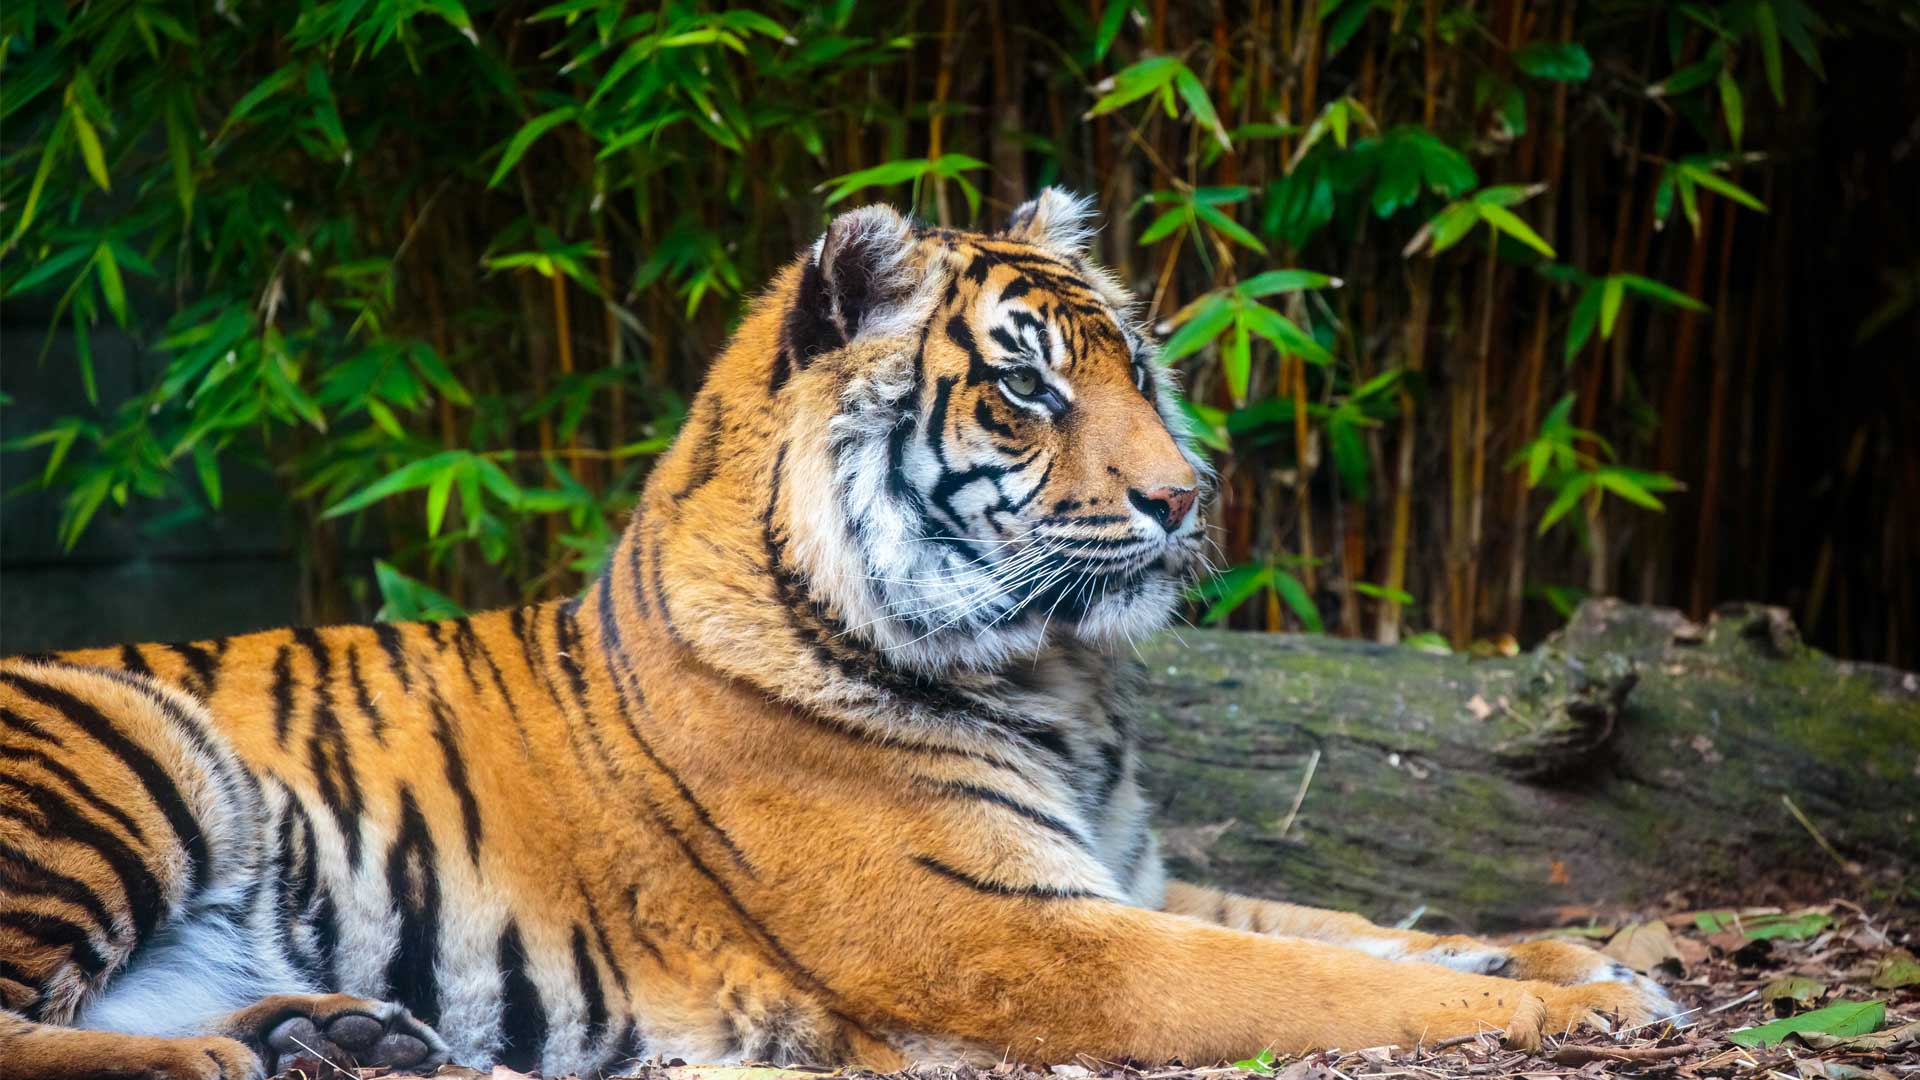 https://cdn.aucklandunlimited.com/zoo/assets/media/sumatran-tiger-gallery-4.jpg